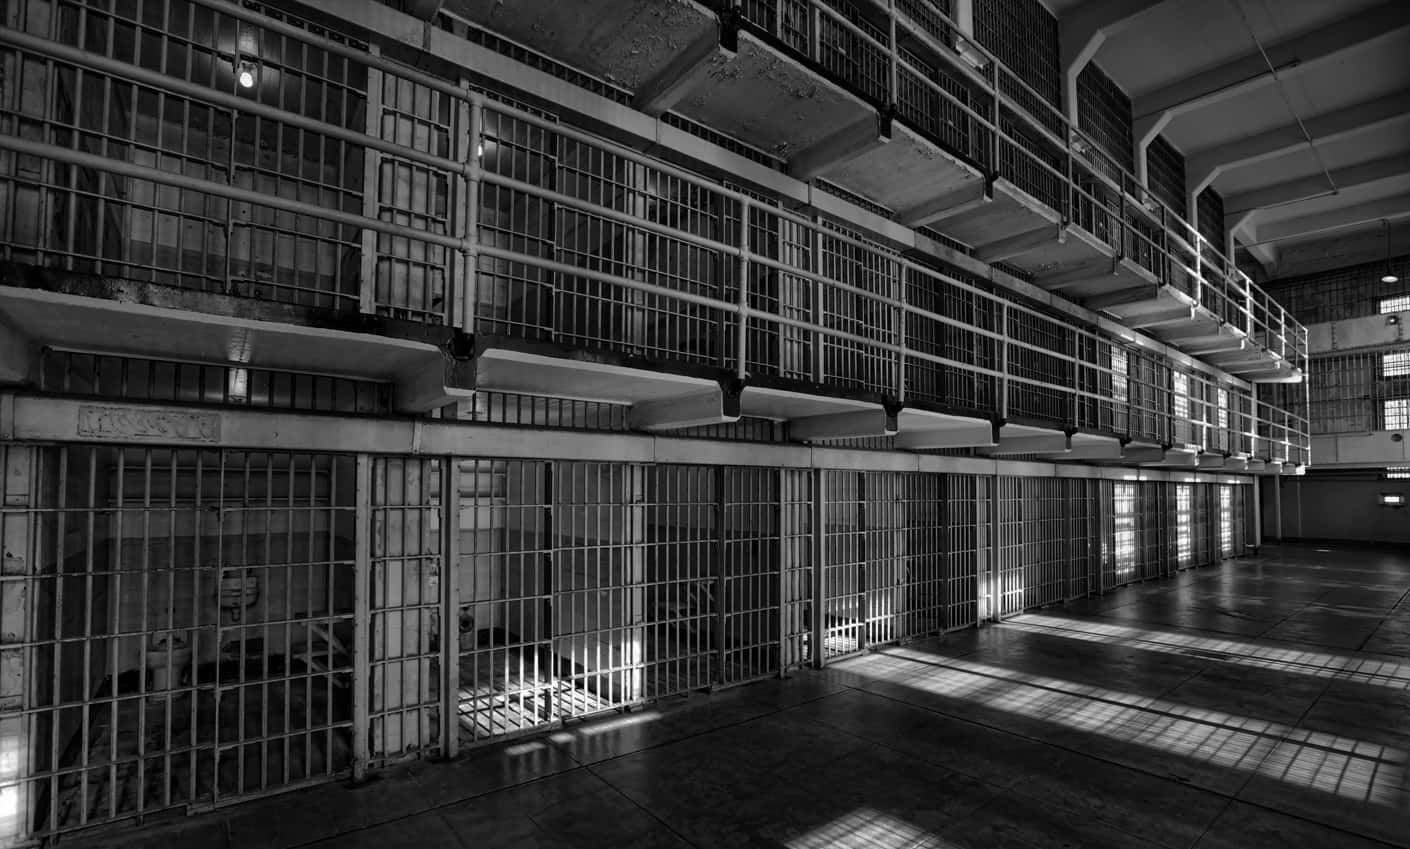 Unosguardo Raro All'interno Di Una Cella Di Prigione